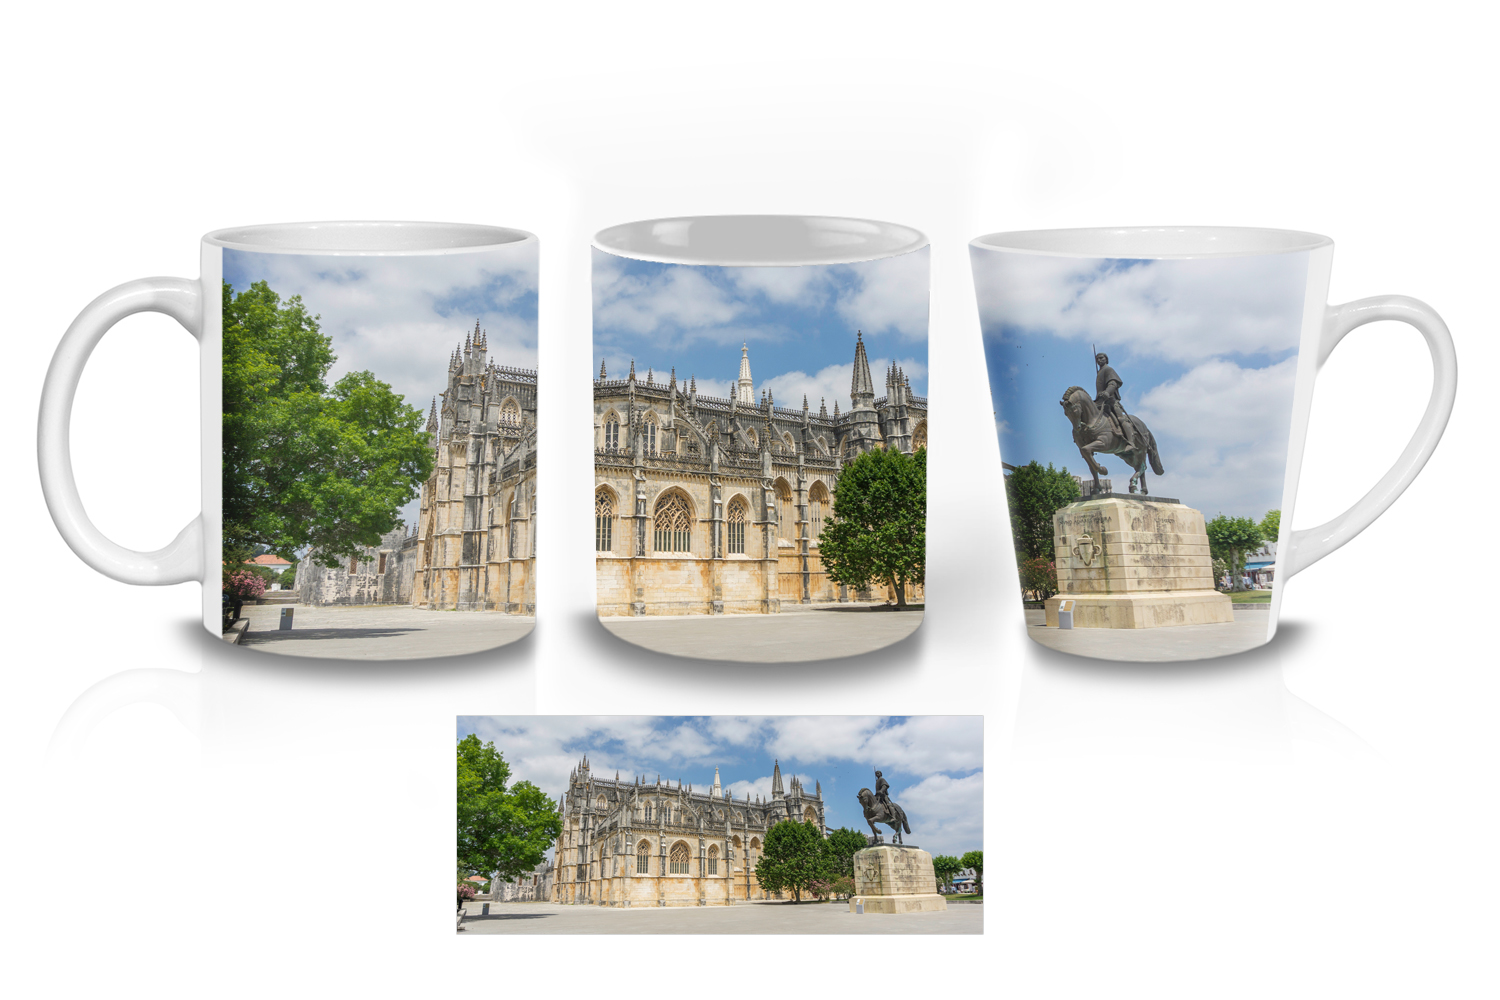 Batalha Ceramic Mug Sets